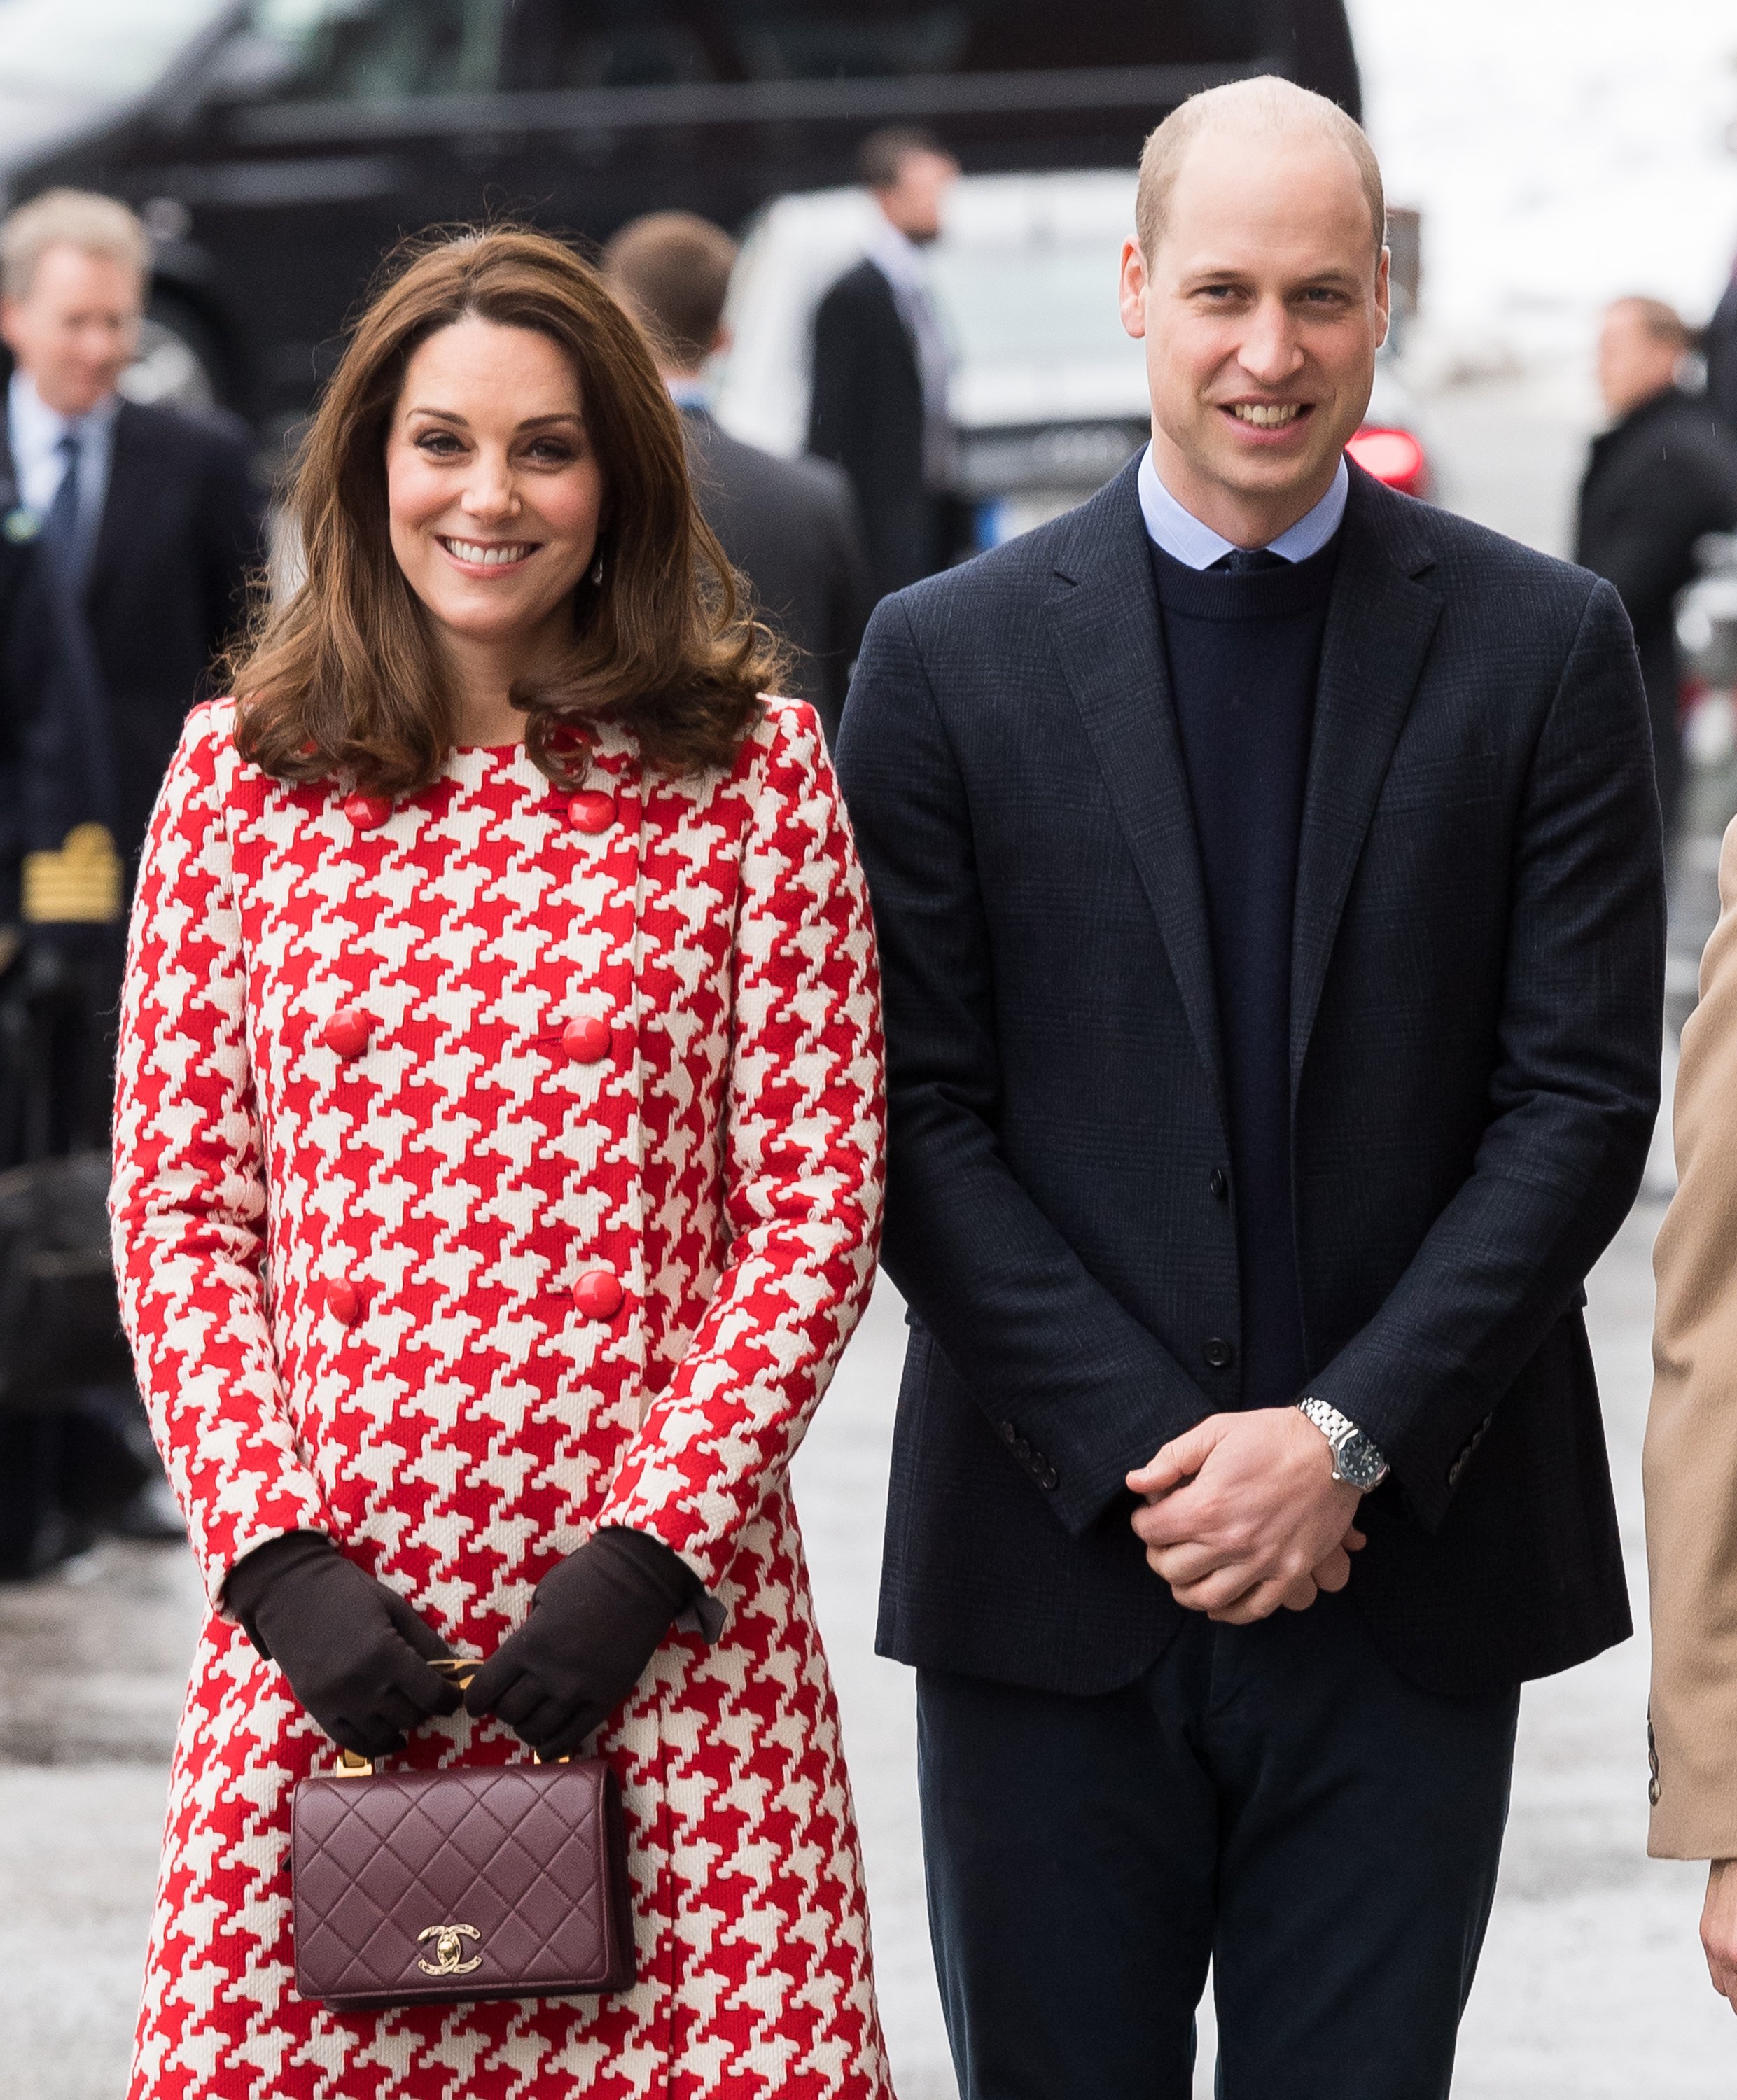 El príncipe William y Kate Middleton en Estocolmo Suecia el 31 de enero de 2018. | Foto: Getty Images